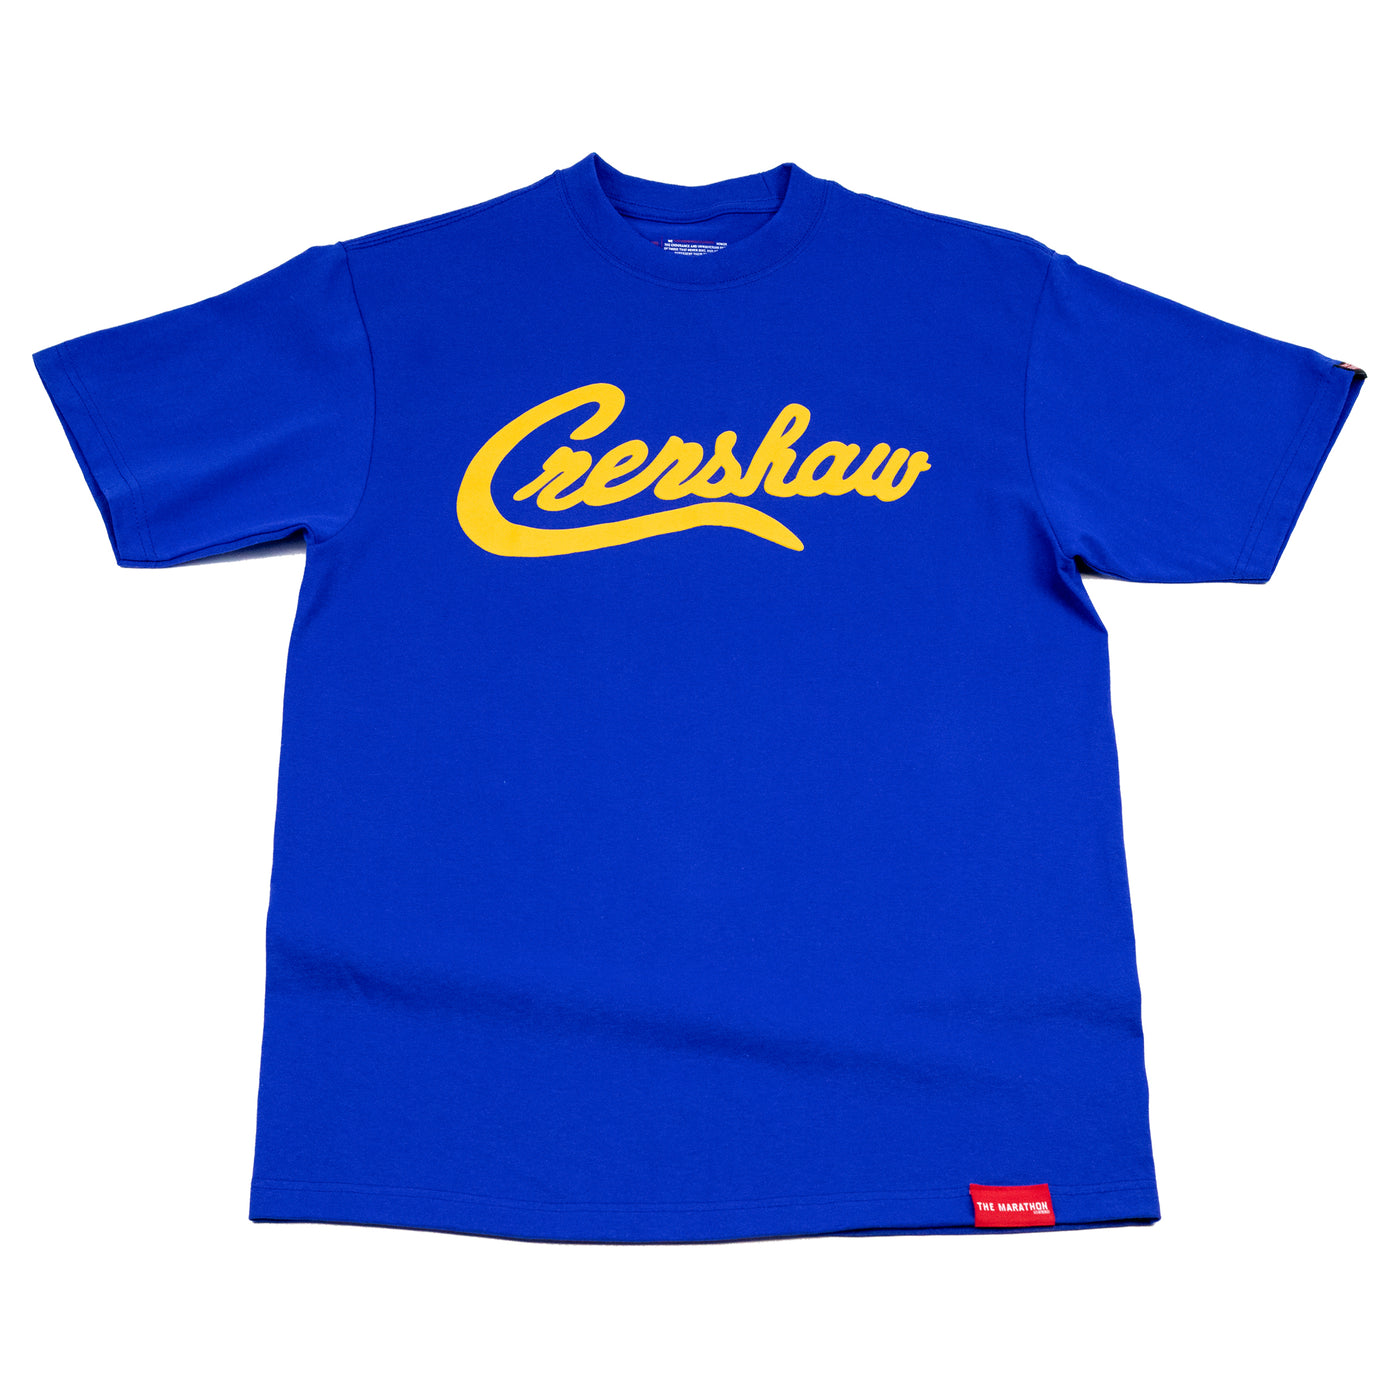 Crenshaw T-Shirt - Royal/Gold - Front